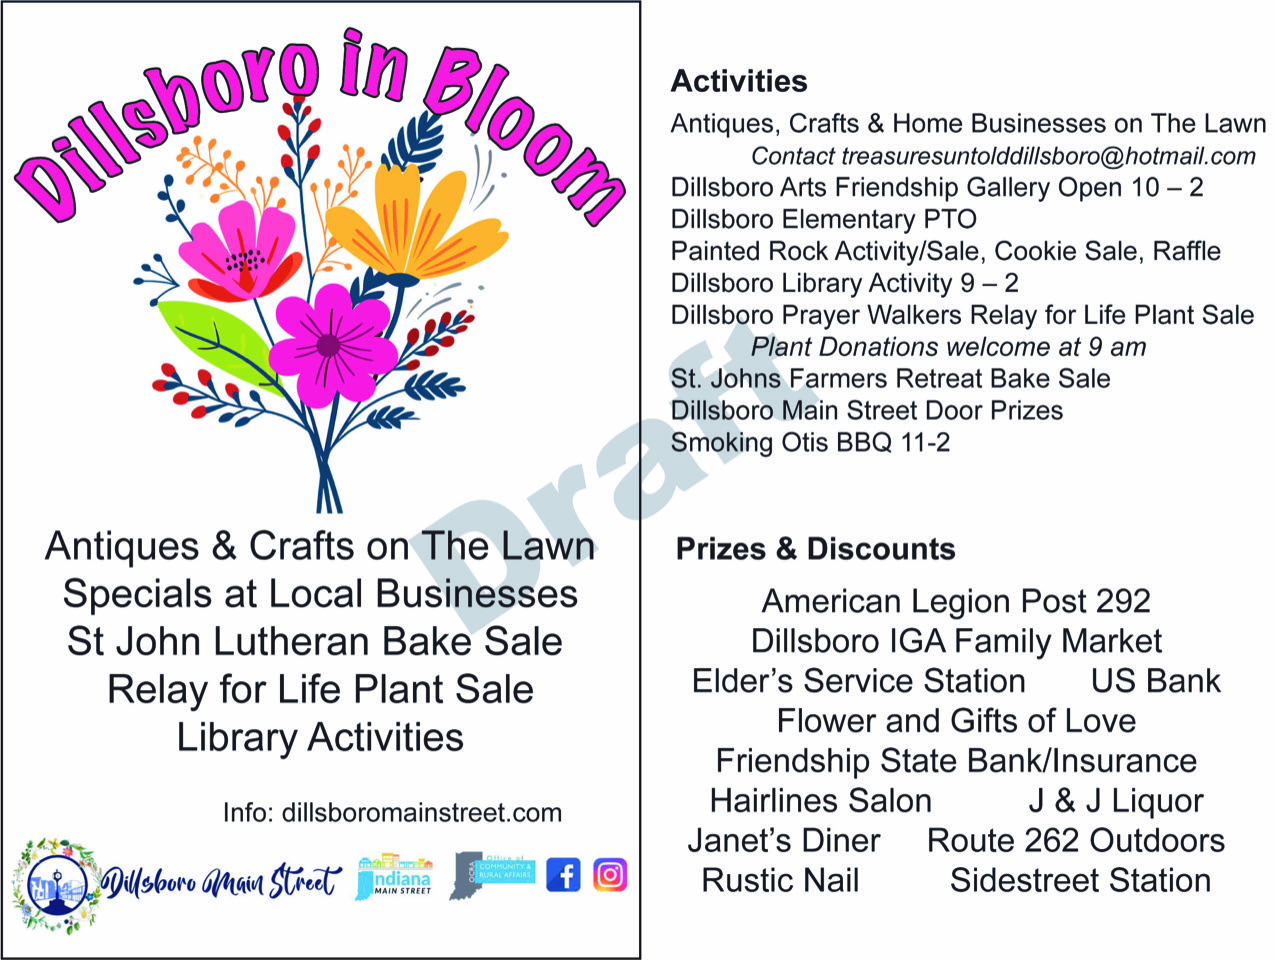 Dillsboro in Bloom activités